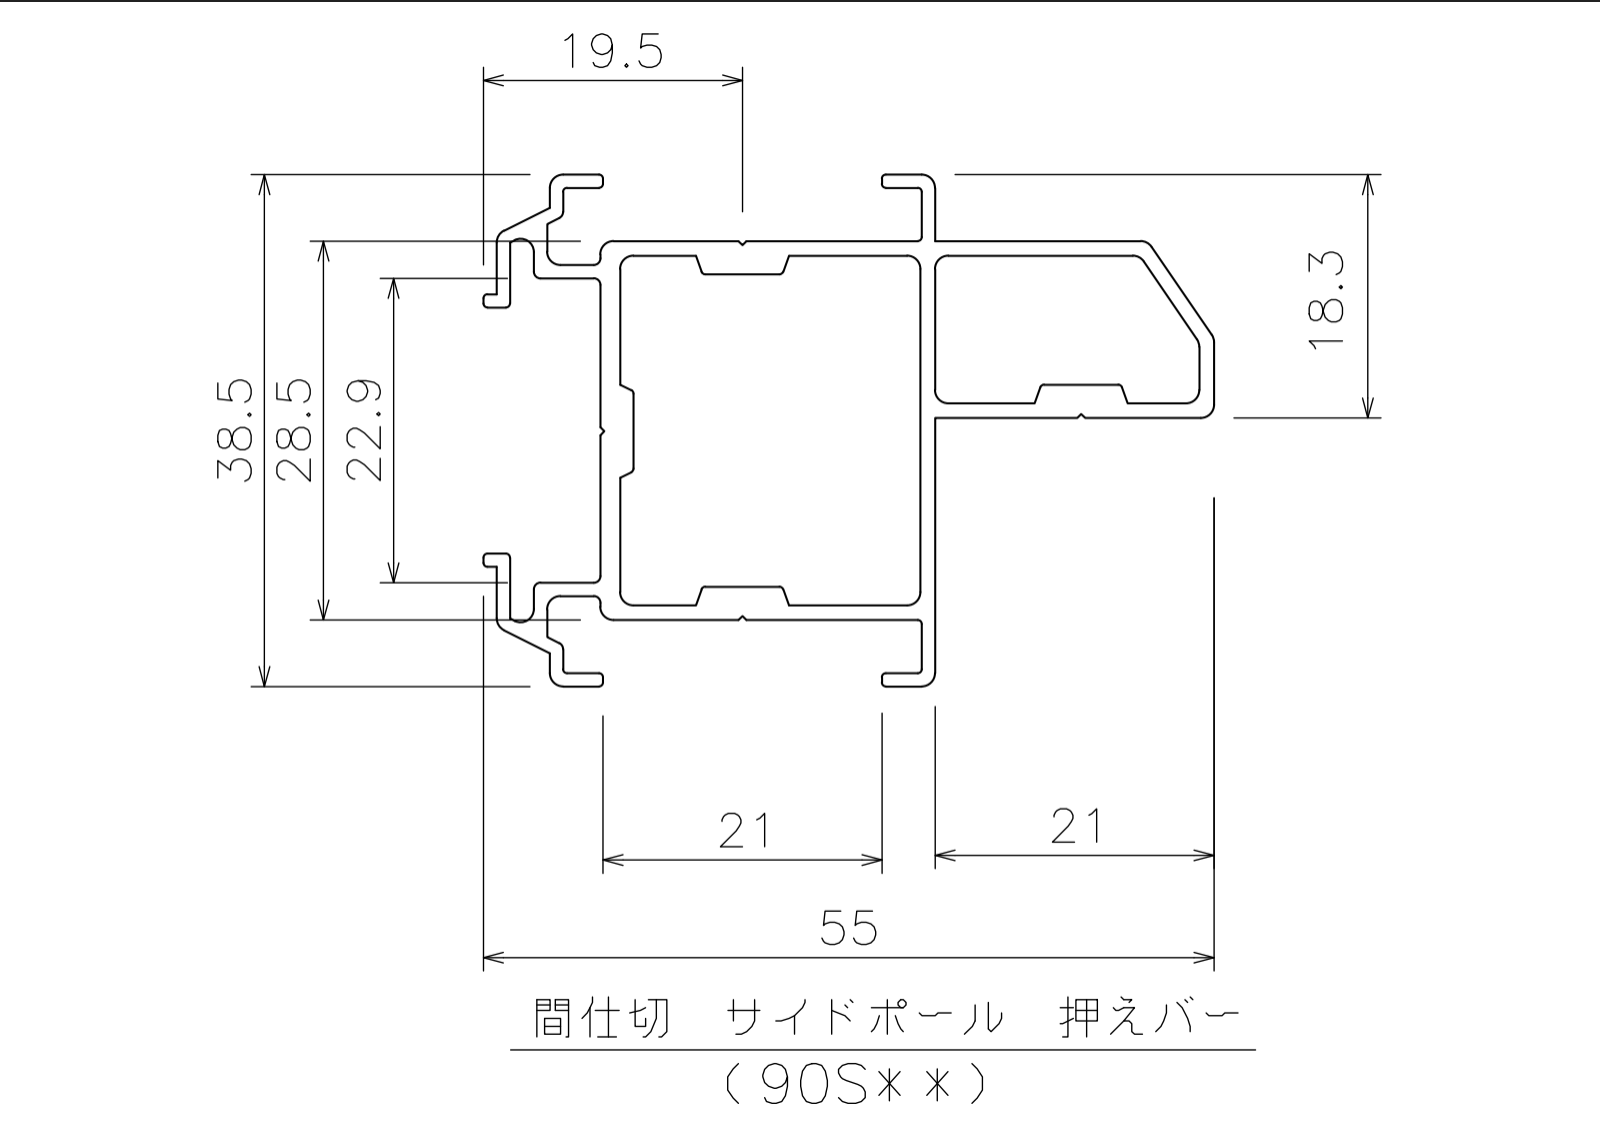 間仕切サイドポール【押えバータイプ】4m図-1